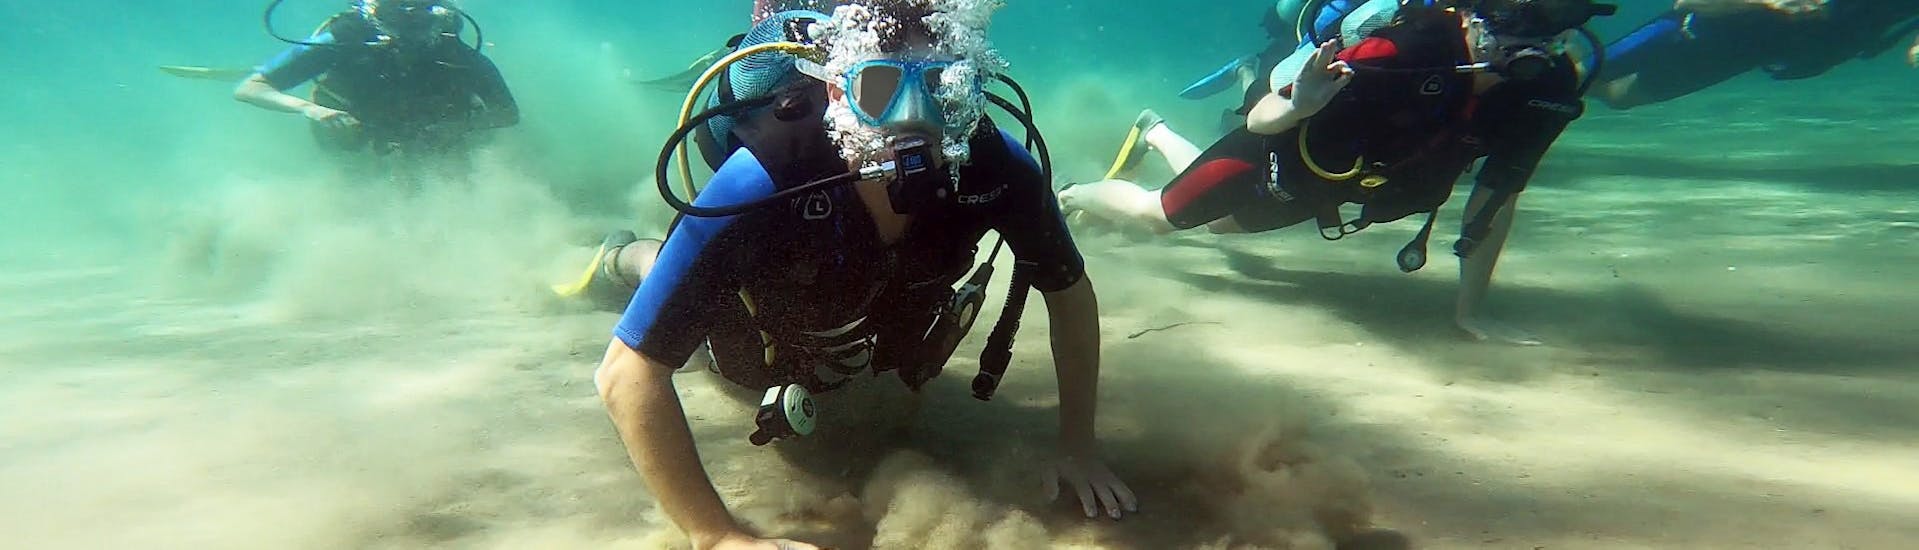 Plongeurs lors de la plongée sous-marine pour débutants près d'Athènes organisée par Kanelakis Diving Experiences - Dimitris Kanelakis.